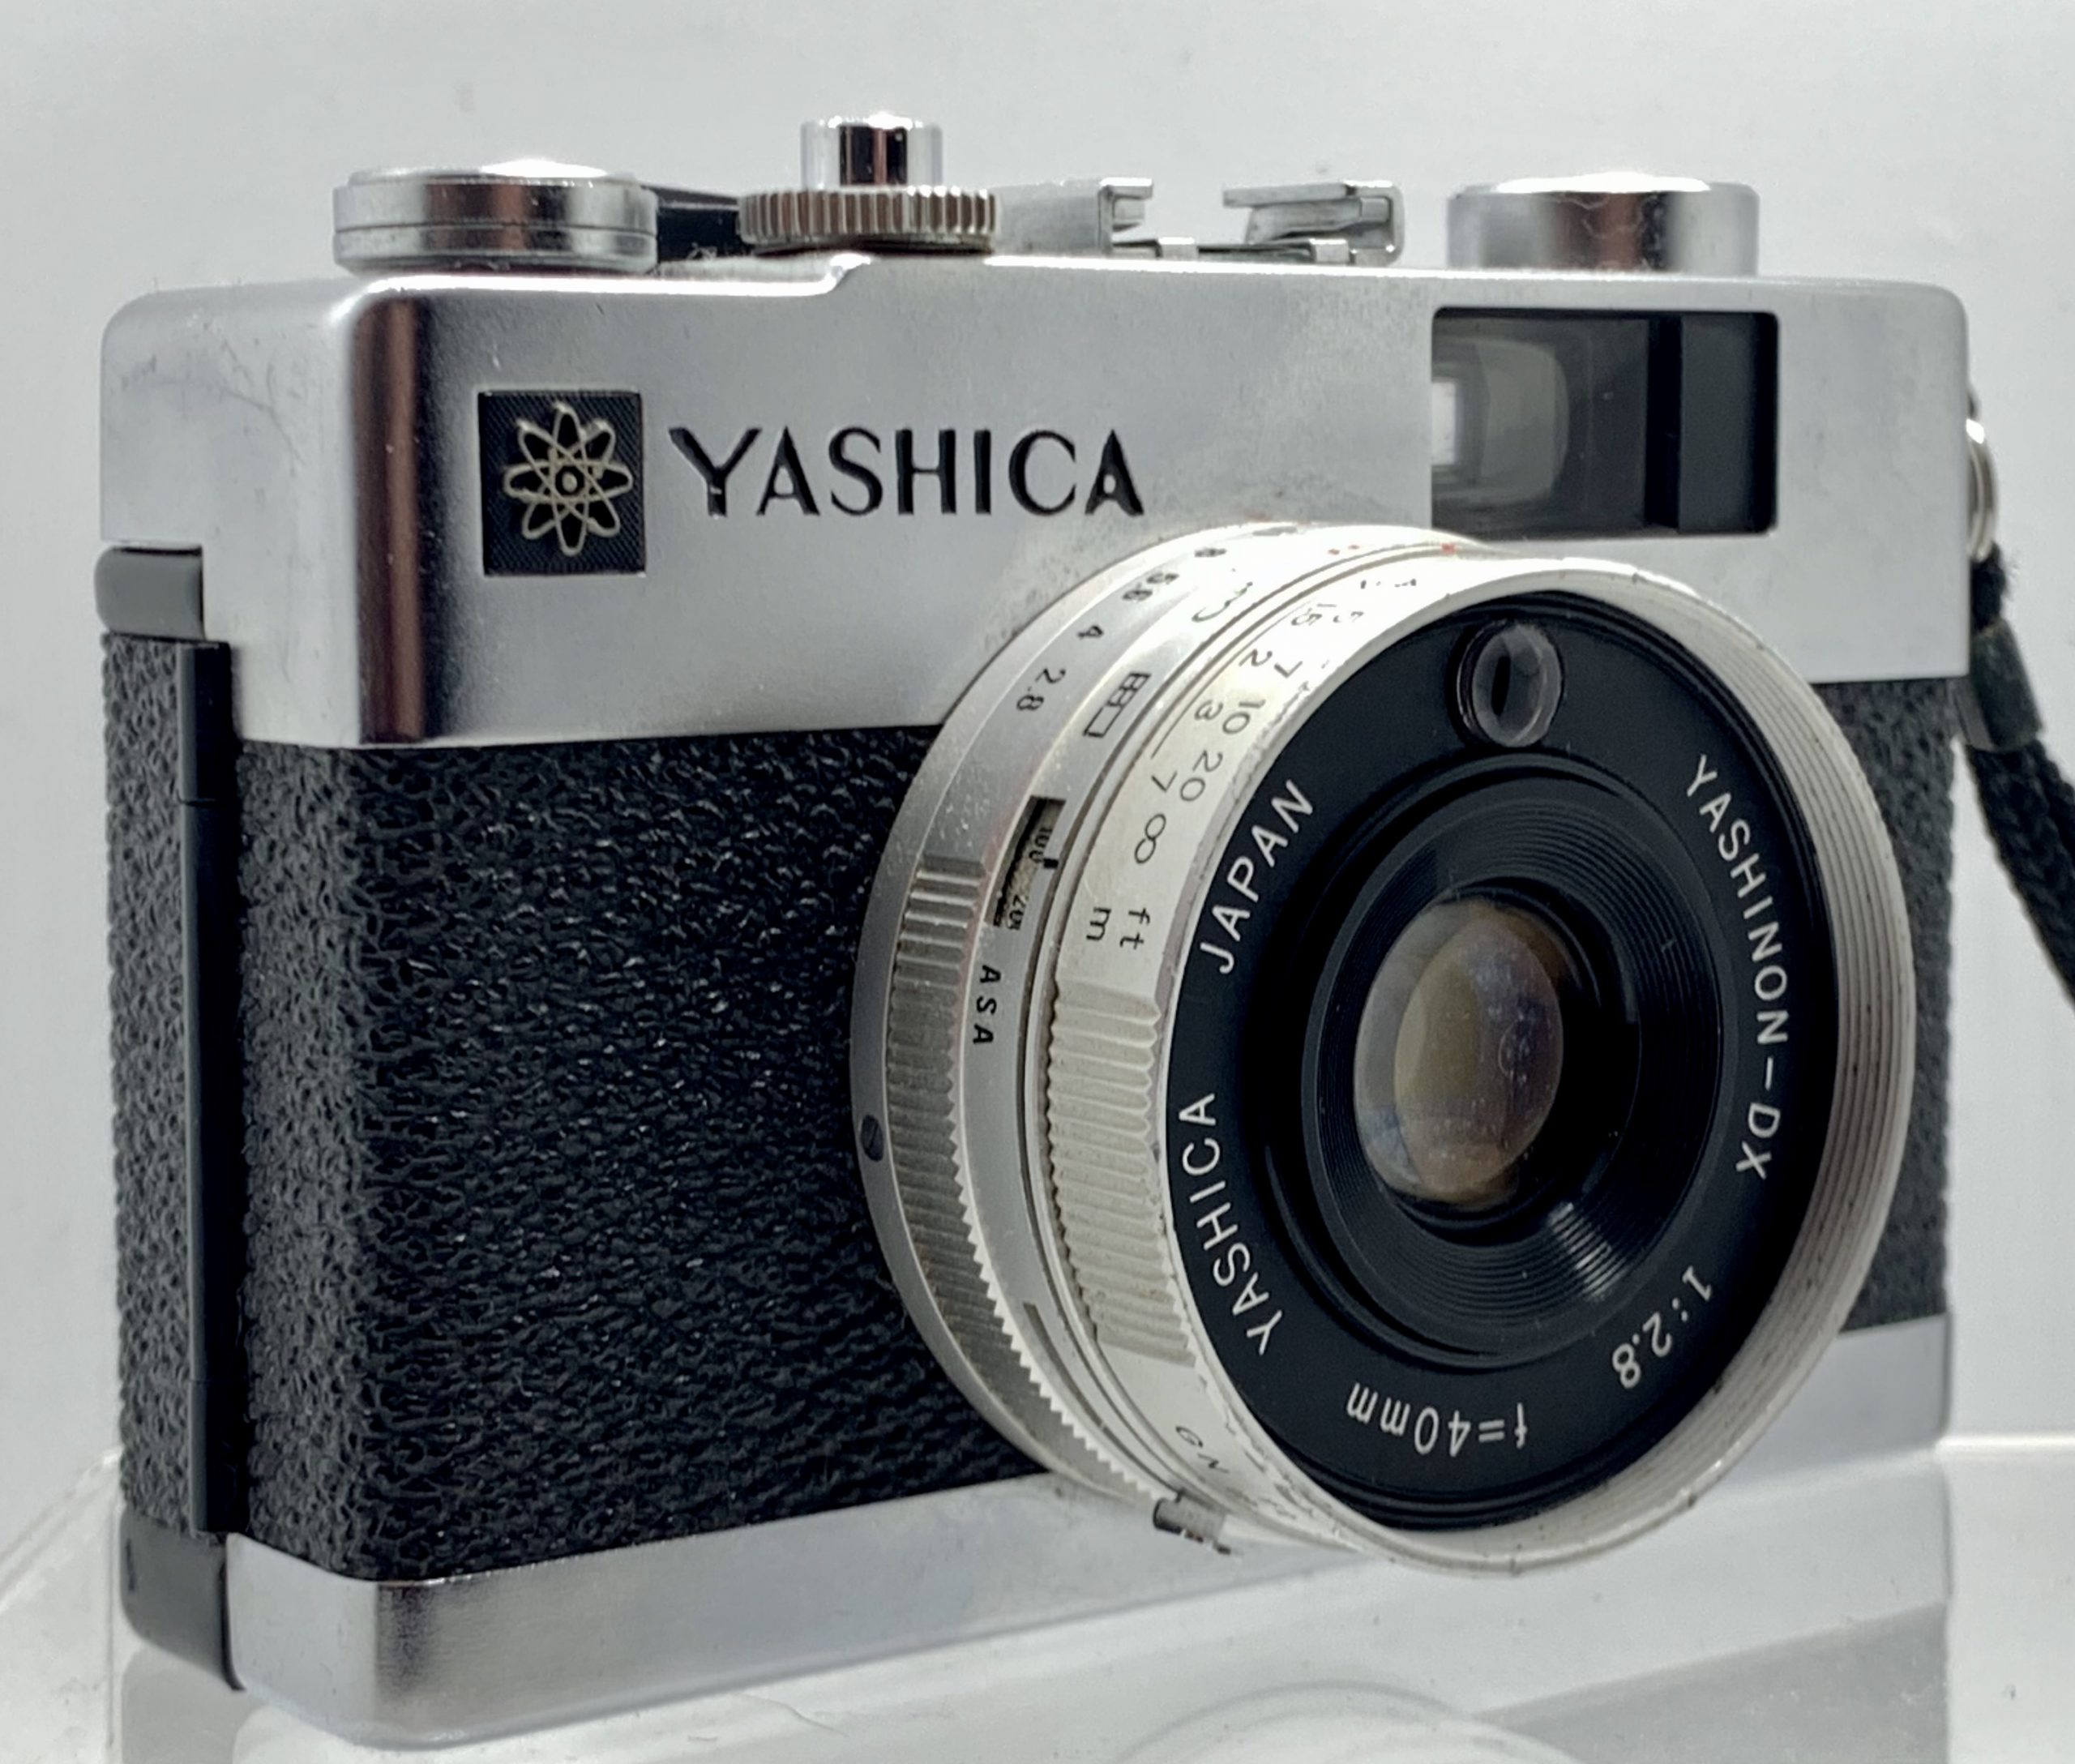 Yashica Electro 35MC